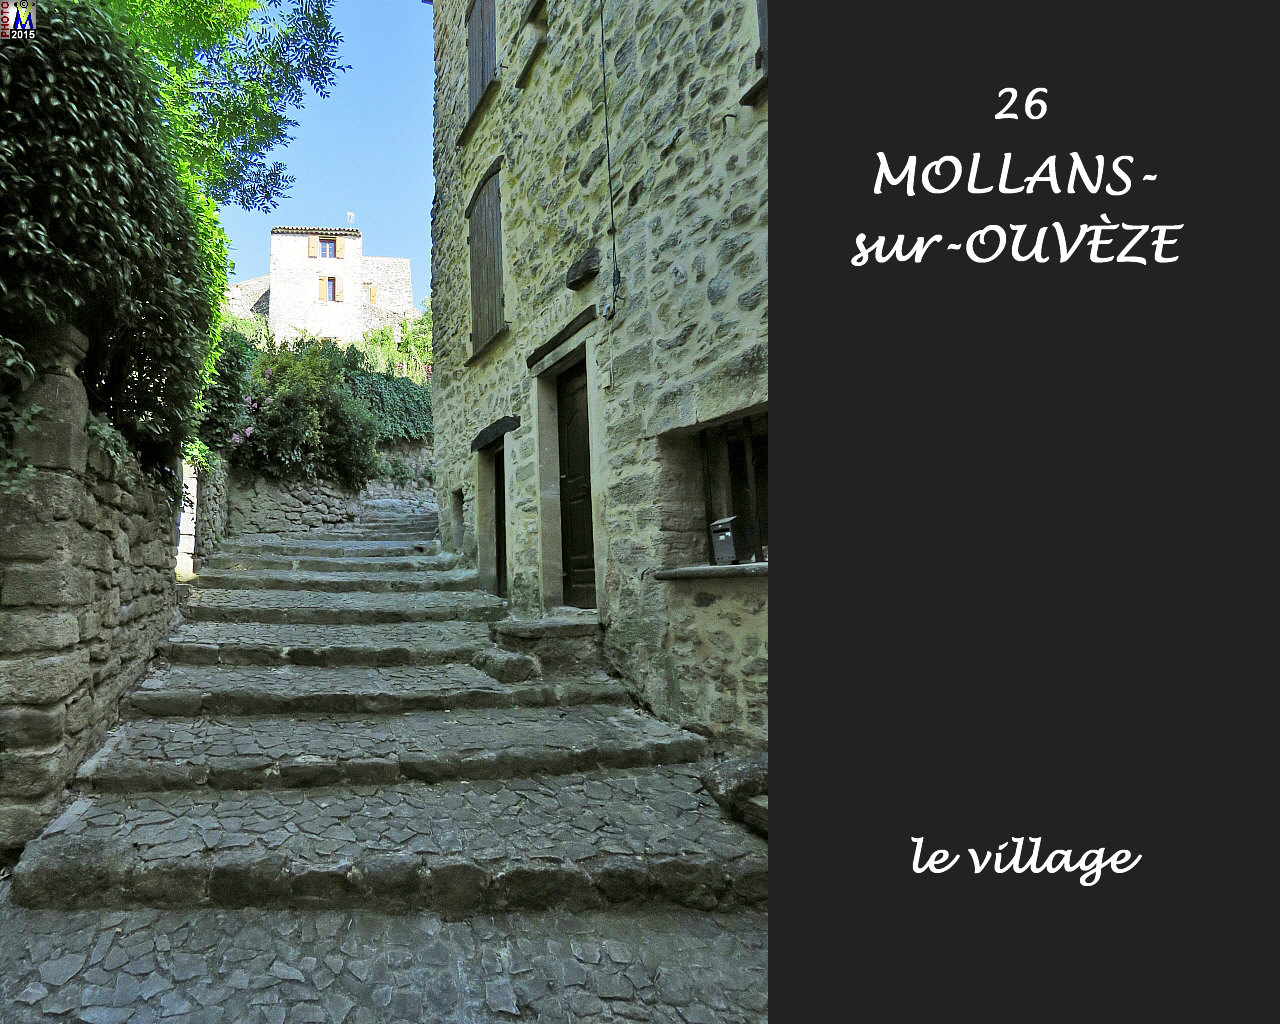 26MOLLANS-OUVEZE_village_114.jpg